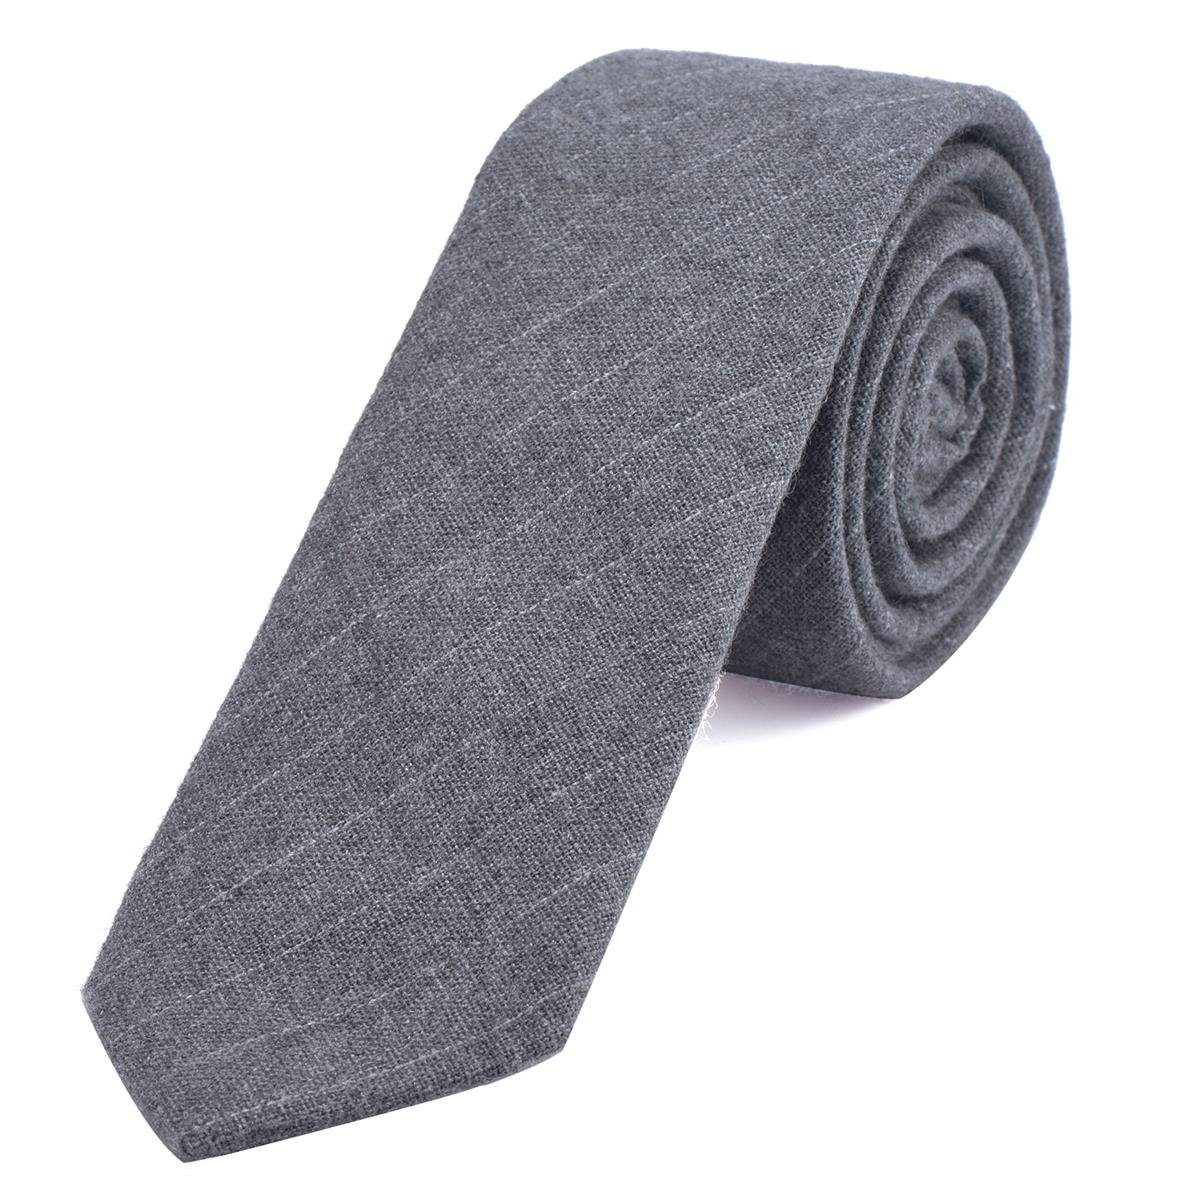 DonDon Krawatte Herren Krawatte 6 cm mit Karos oder Streifen (Packung, 1-St., 1x Krawatte) Baumwolle, kariert oder gestreift, für Büro oder festliche Veranstaltungen hellgrau gestreift